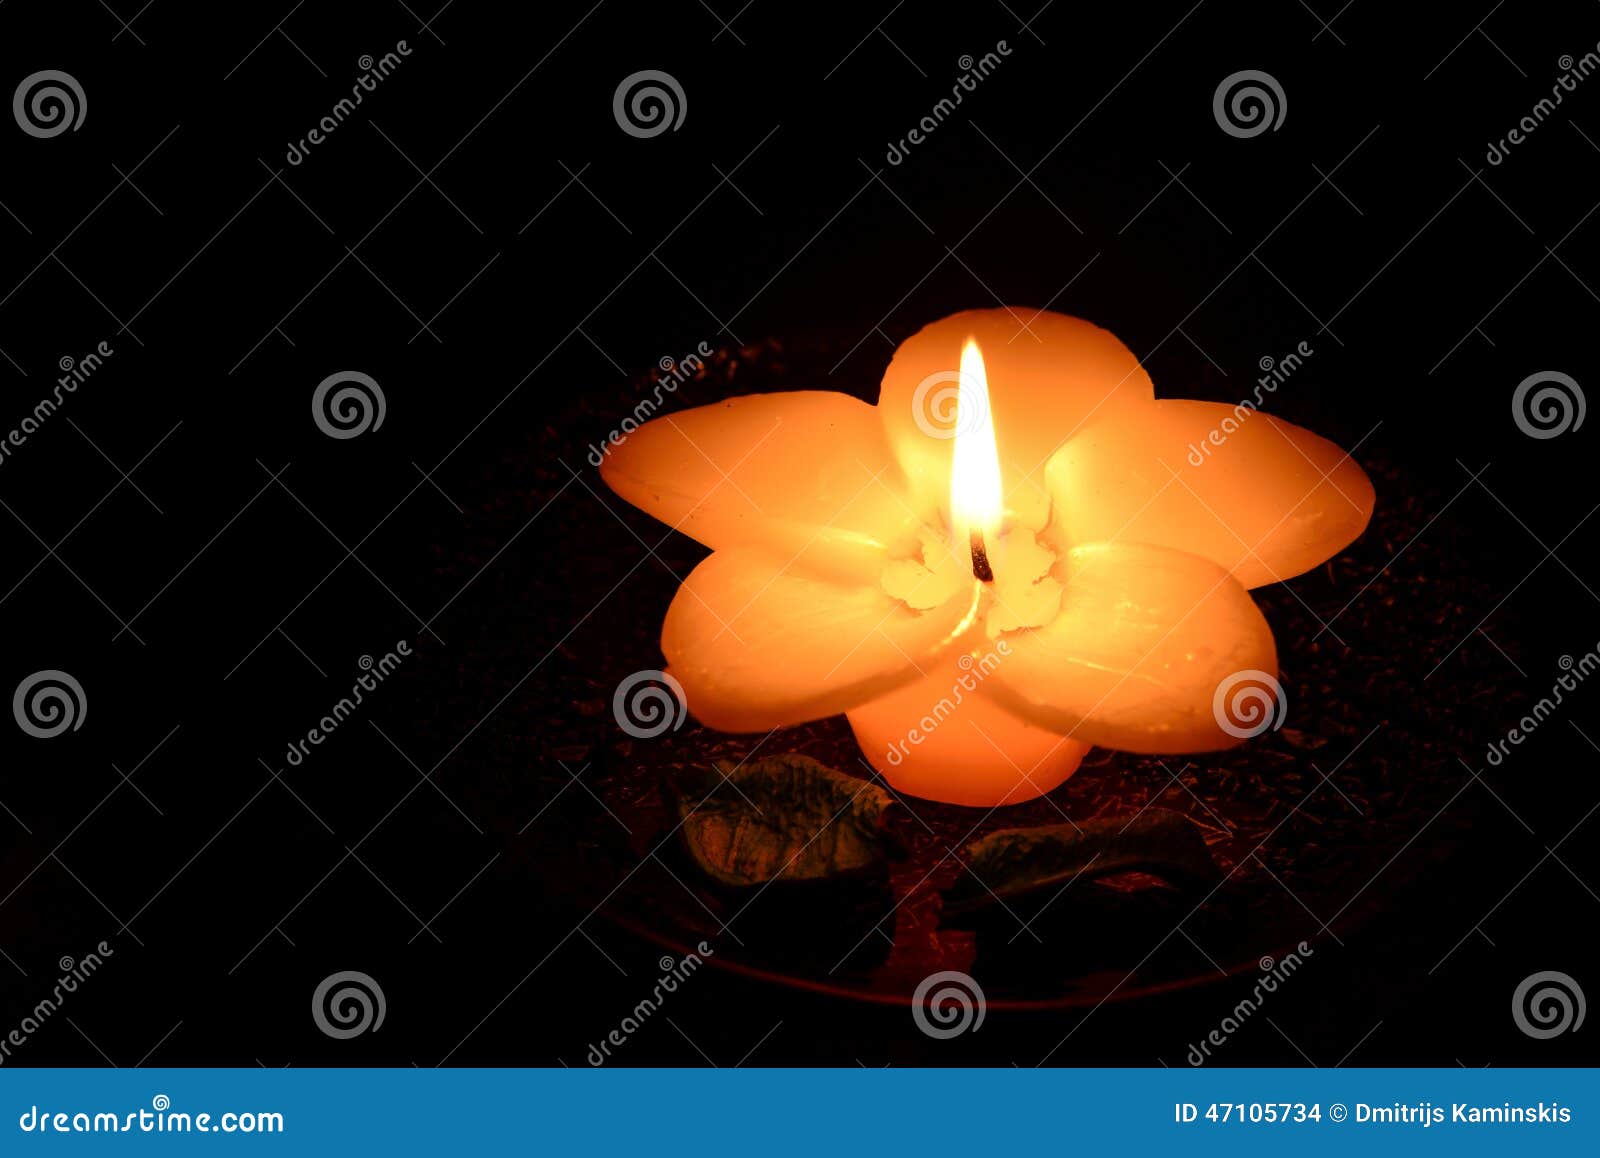 Flower-shaped Candle Burning On A Black Background Stock Photo - Image